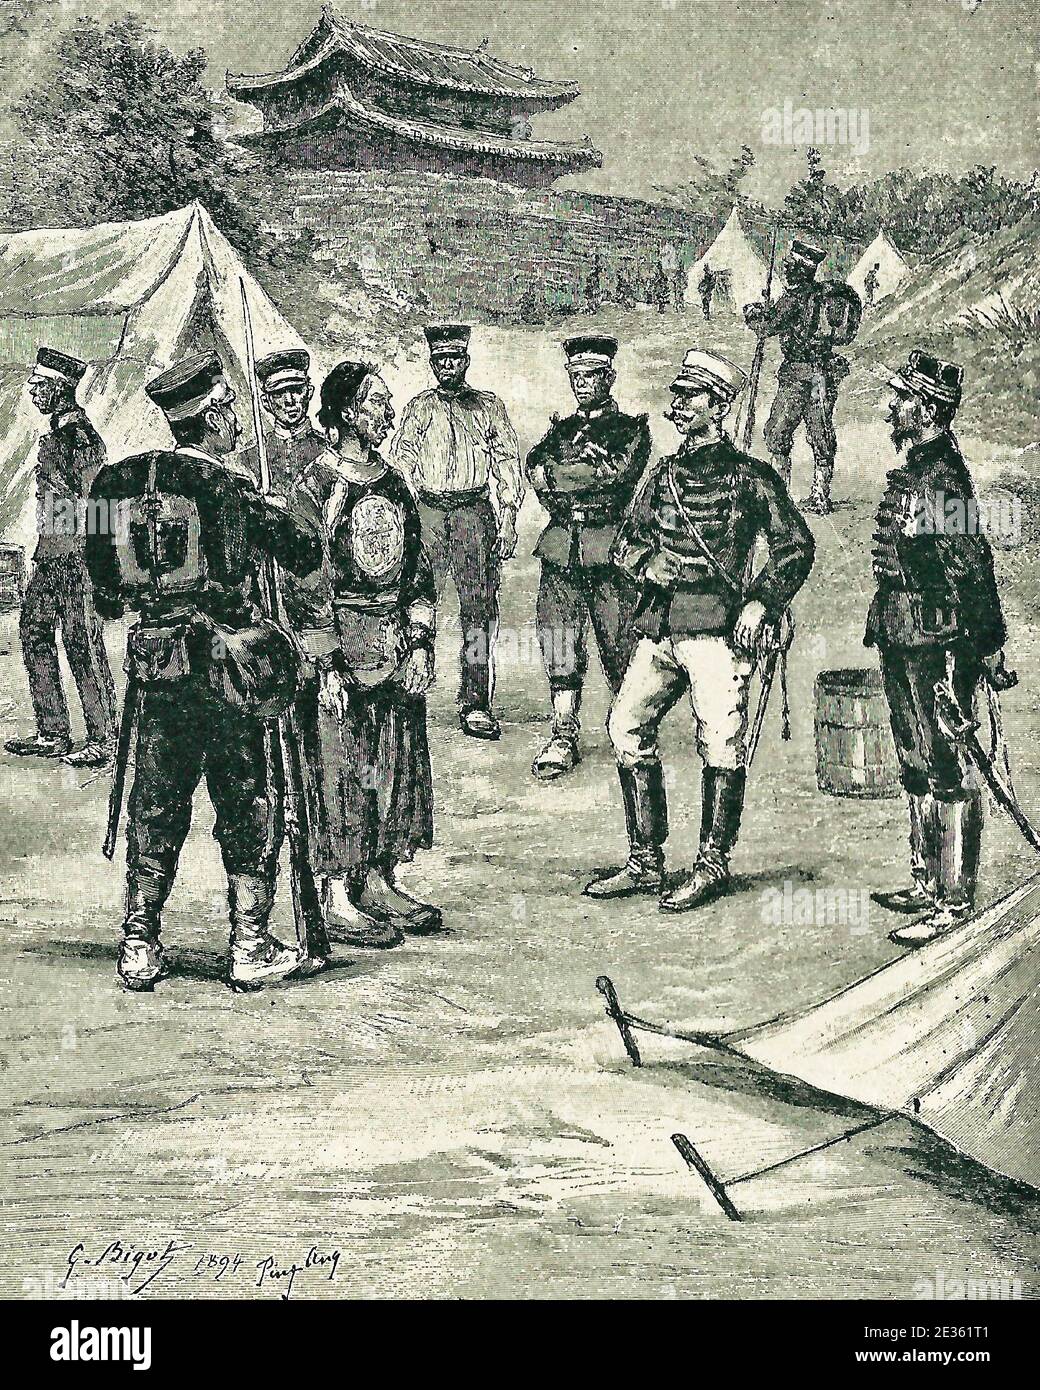 Japanische Offiziere verhörten chinesische Gefangene nach der Schlacht von Ping Yang während des chinesisch-japanischen Krieges 1895 Stockfoto